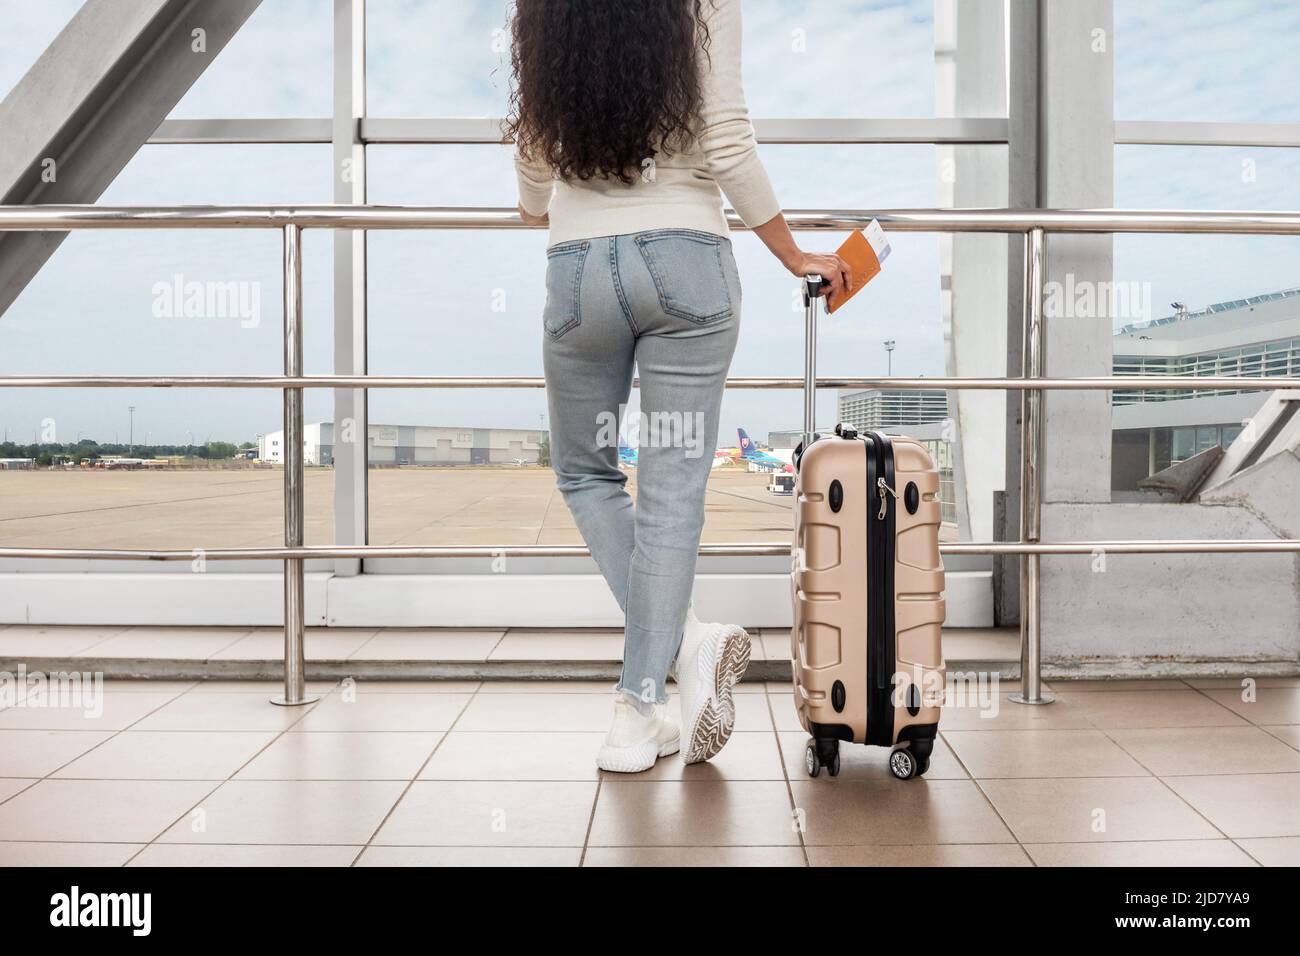 Prise de vue rognée d'une jeune femme debout avec une valise près de la fenêtre de l'aéroport Banque D'Images